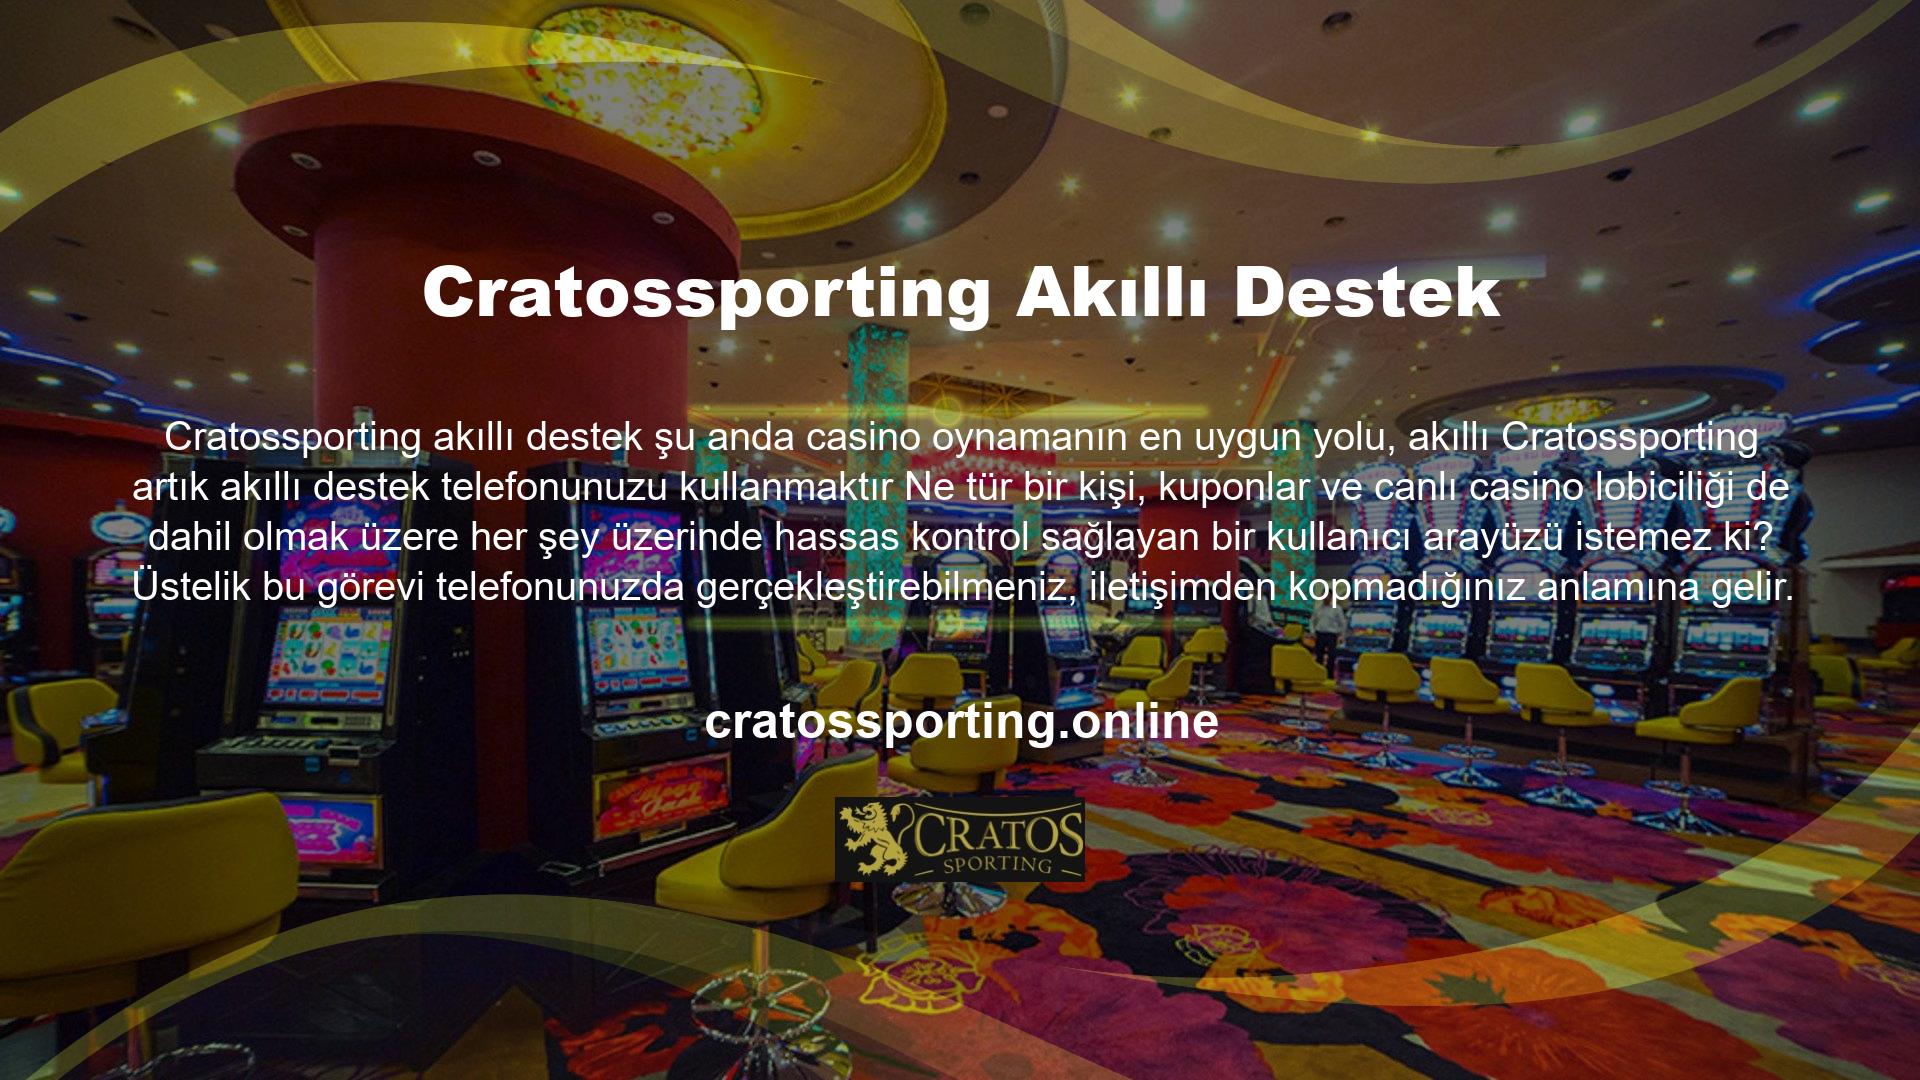 Cratossporting mobil sitesi, işlemi bir bilgisayardaki gibi gerçekleştirmenize olanak tanır